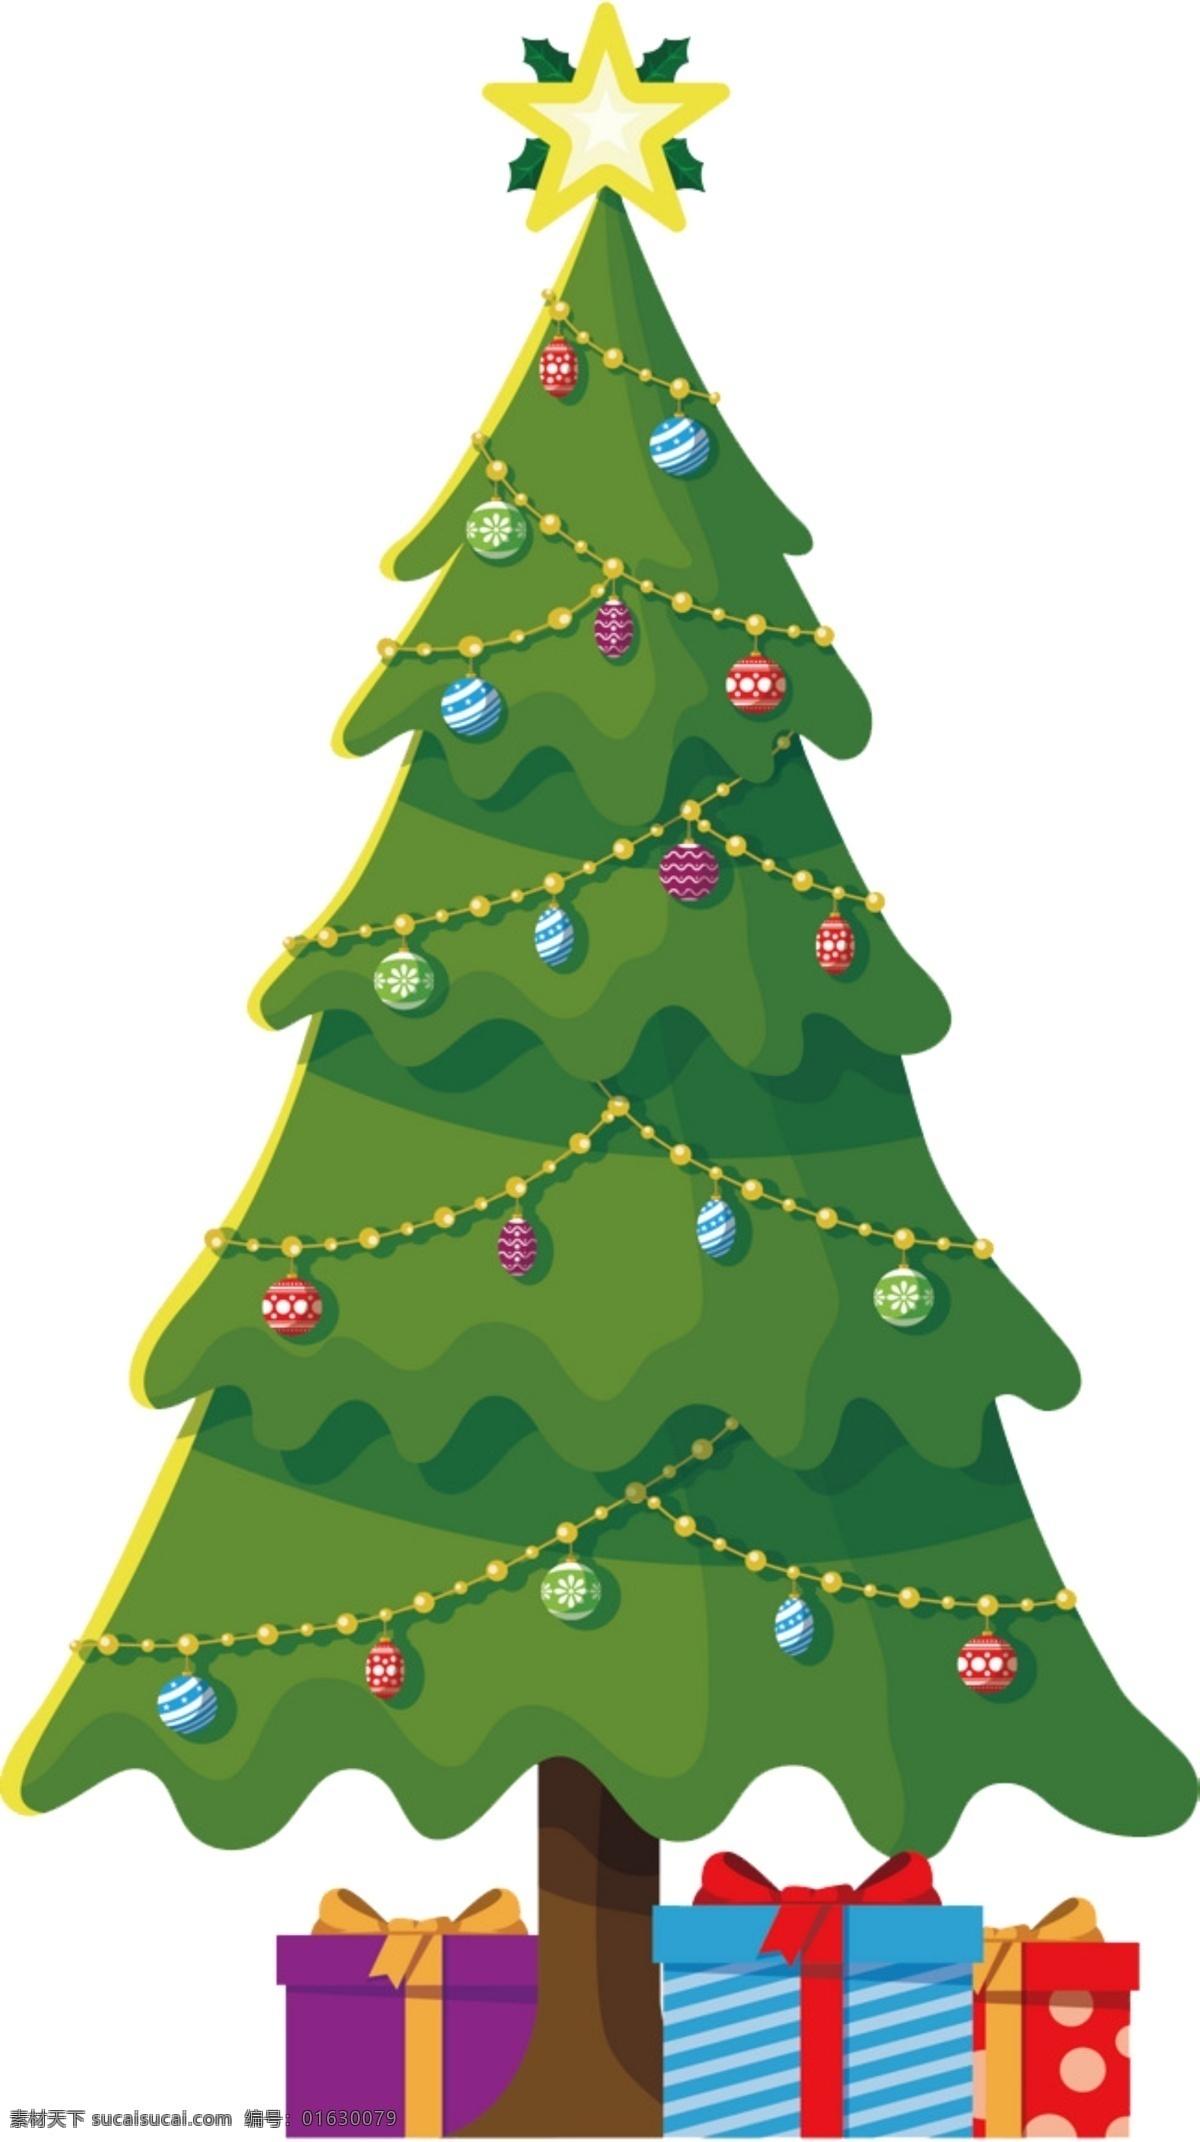 卡通 圣诞节 元素 圣诞树 装饰 图案 集合 卡通绿 卡通圣诞树 可爱圣诞树 圣诞挂饰 圣诞节装饰 圣诞树素材 圣诞树图案 手绘风格